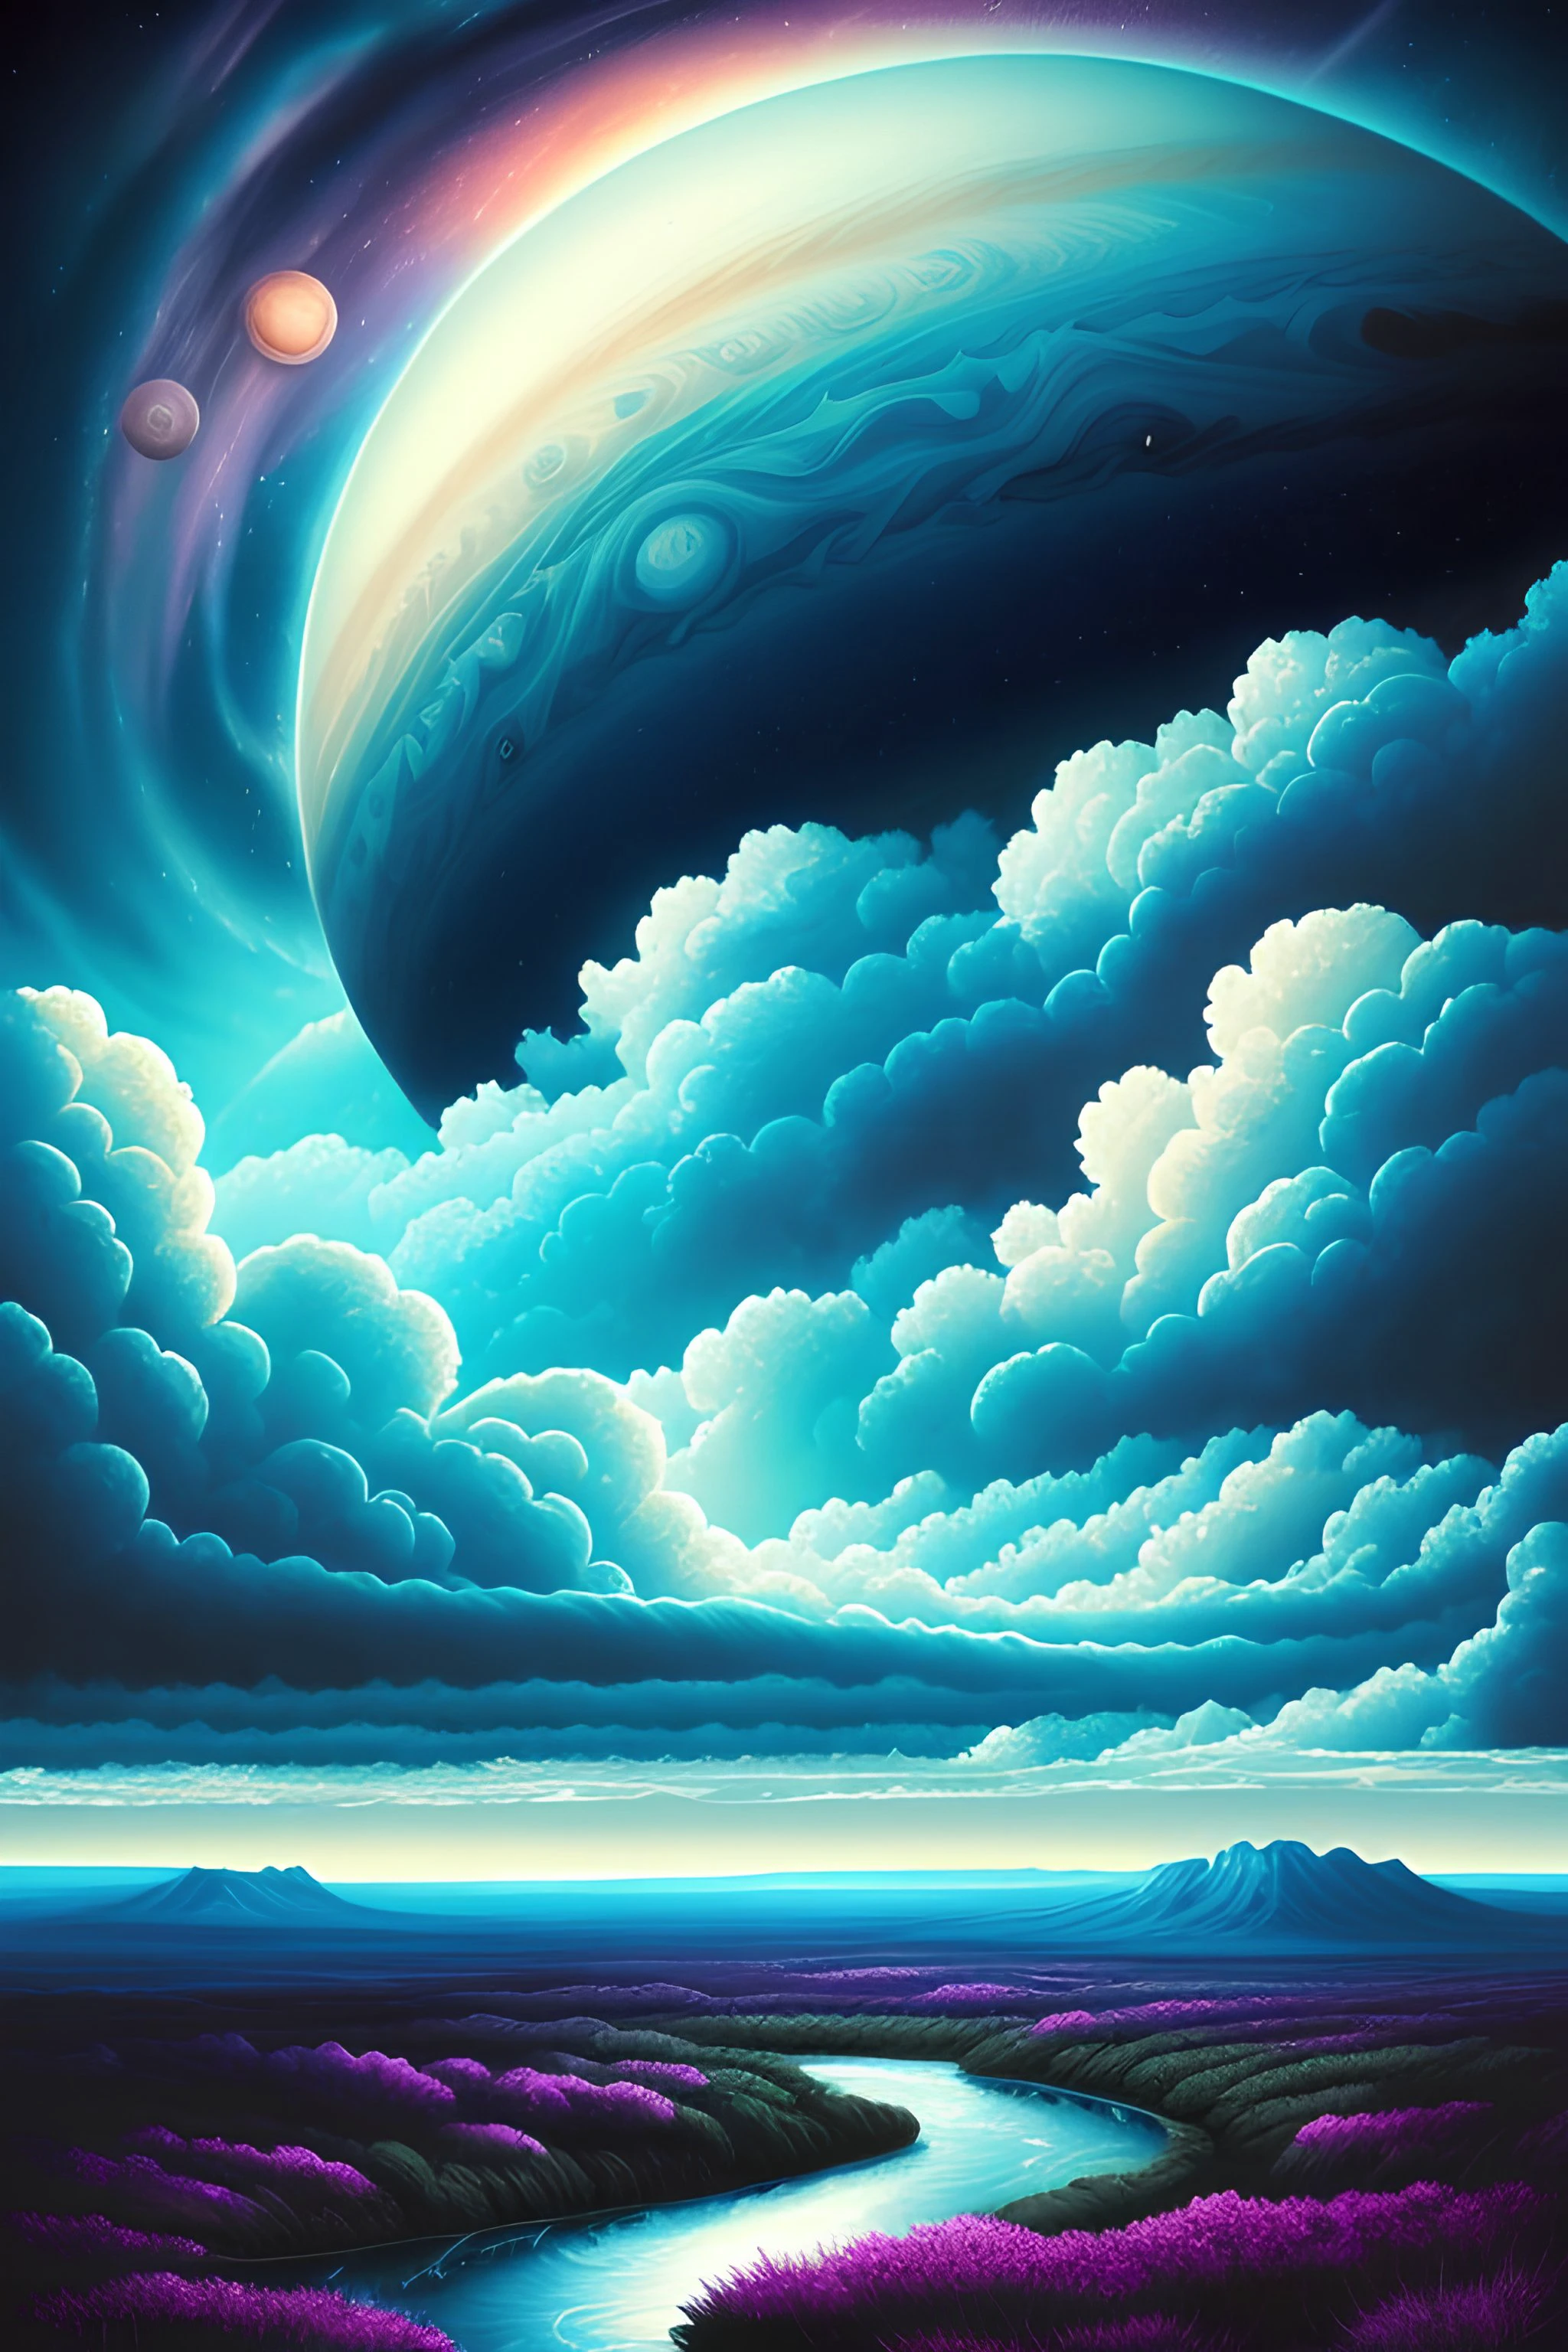 목성 구름 그림 - Dan Mumford, 외계 풍경과 식물, 서사시적인 장면, 많은 소용돌이 구름, 높은 노출, 매우 상세한, 현실적인, 생기 넘치는 블루 틴트 색상, UHD